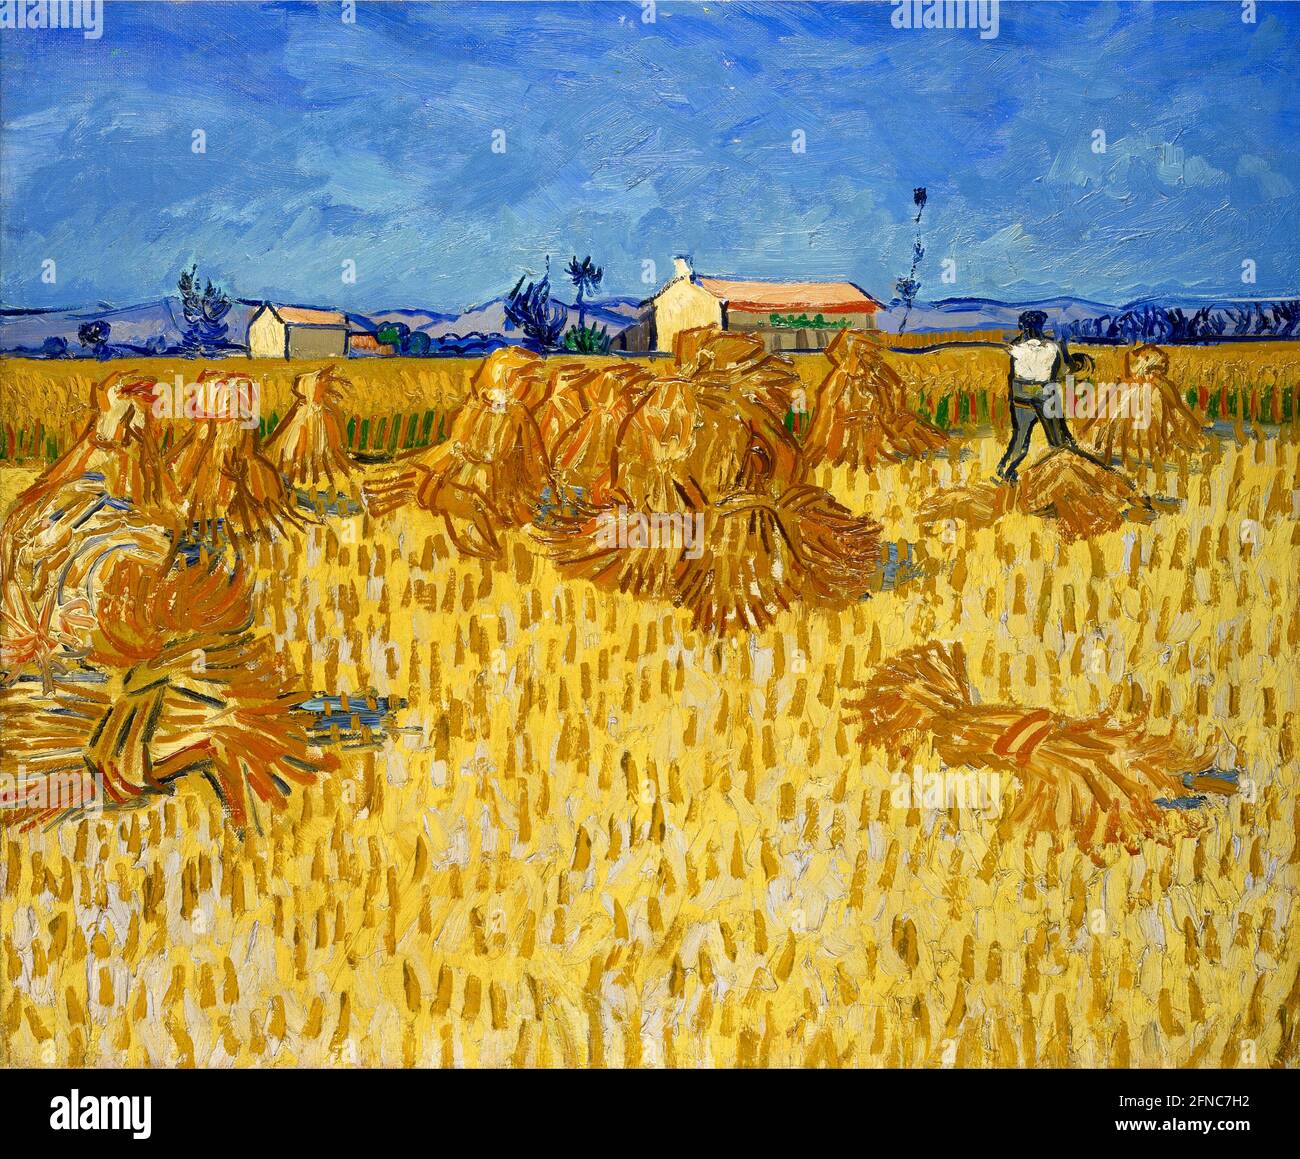 Vincent van Gogh opere d'arte dal titolo Harvest in Provenza. Scena rurale dal sud della Francia con una vivida raccolta di mais dorato contro un cielo blu ricco. Foto Stock